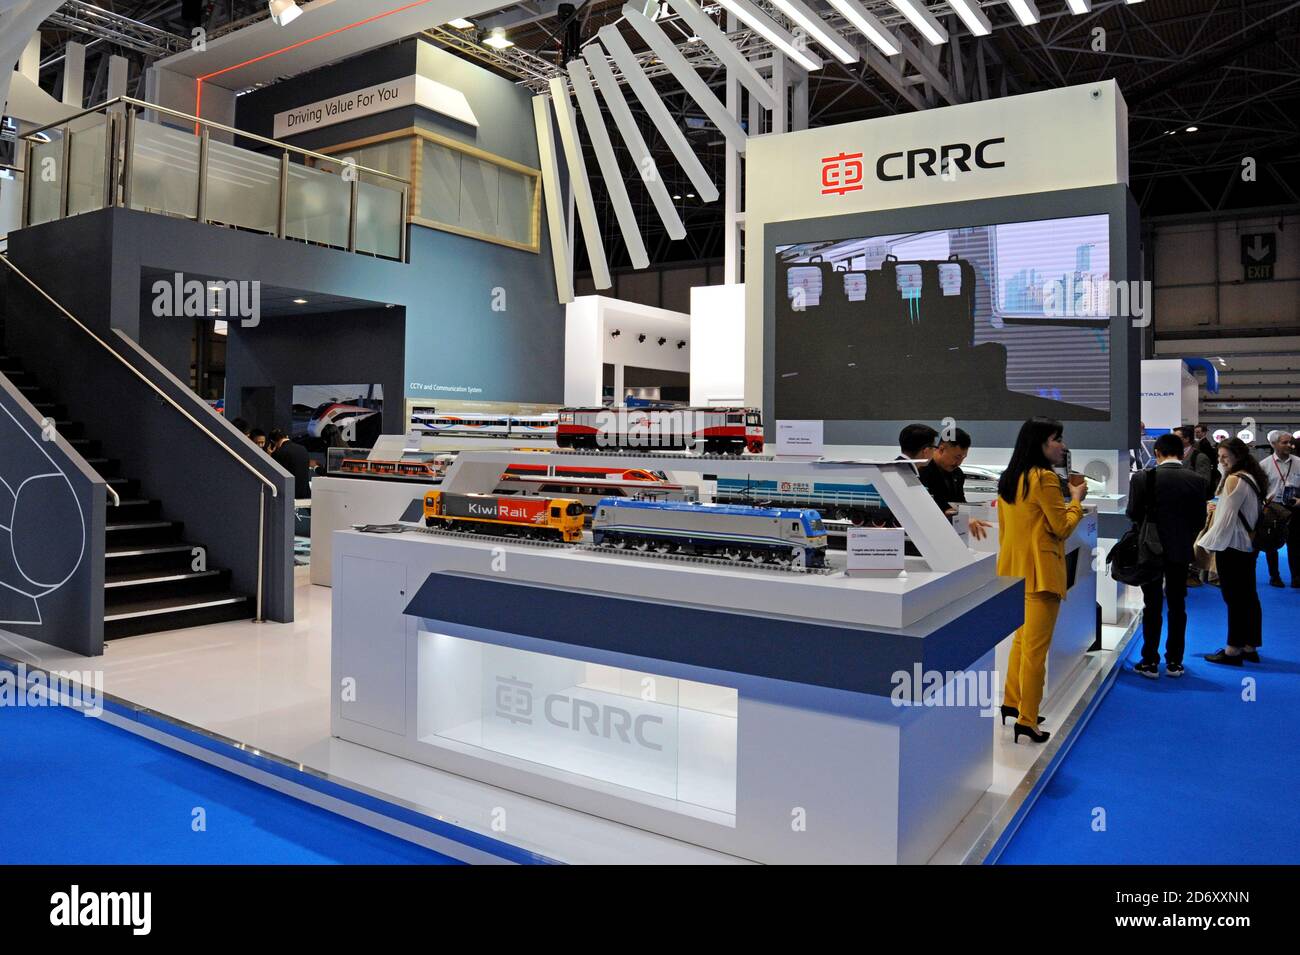 CRRC Cina Ferrovia stand presso il RailTex industria ferroviaria exhibition, NEC, Birmingham Aprile 2019 Foto Stock